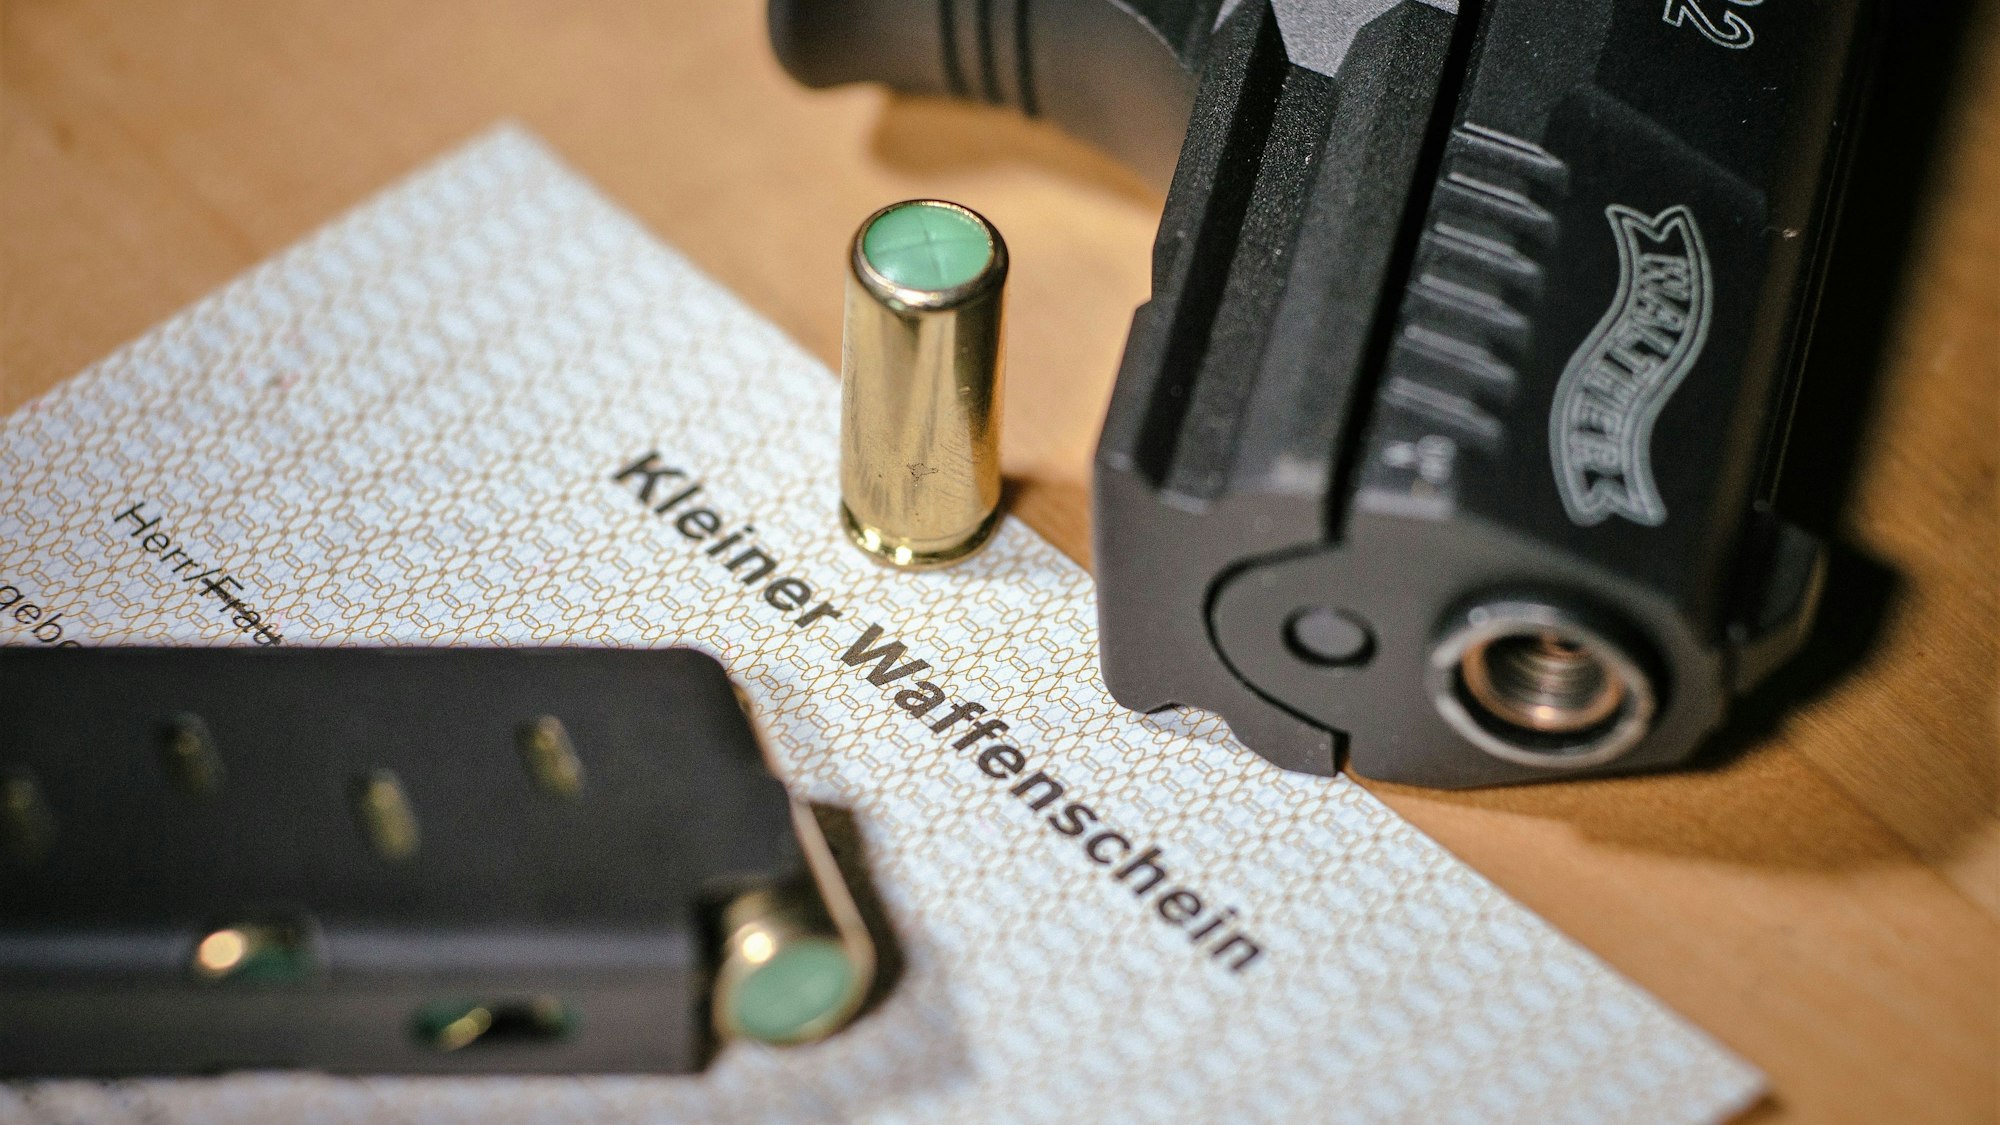 Ein Kleiner Waffenschein liegt zwischen einer Schreckschuss-Pistole, einem Magazin und einer Knallpatrone.